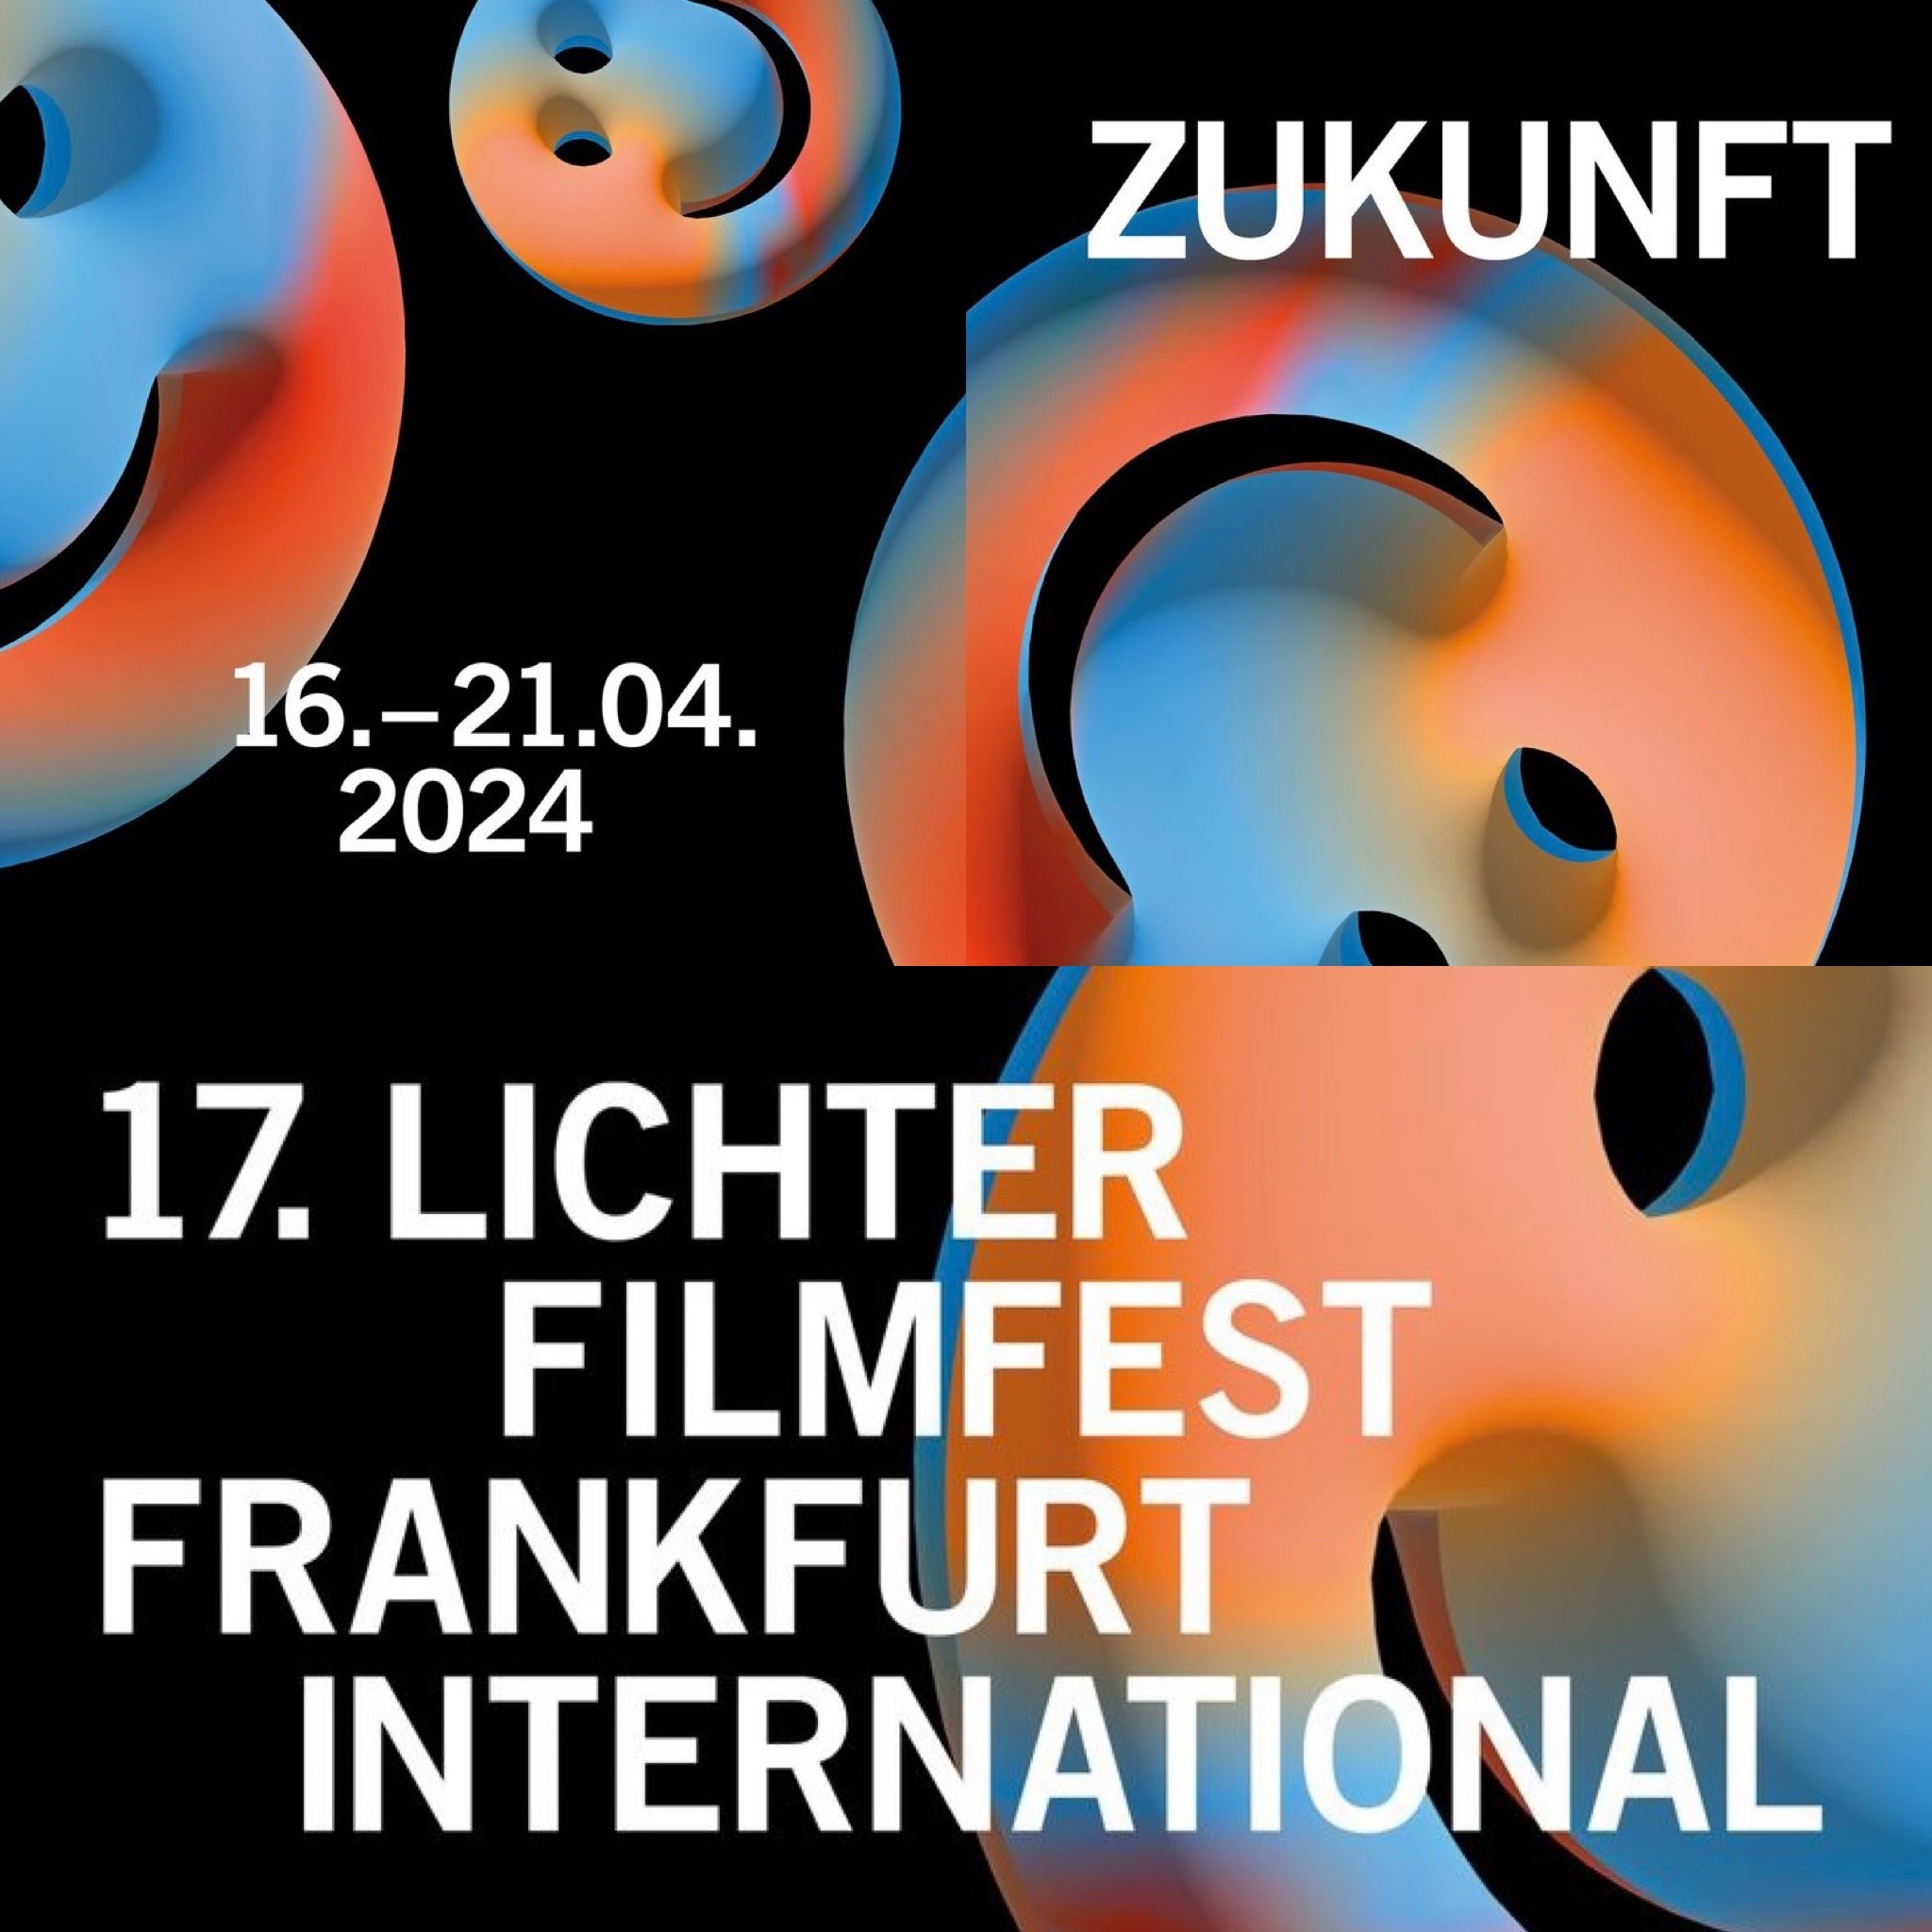 Lichter Filmfest Frankfurt International  